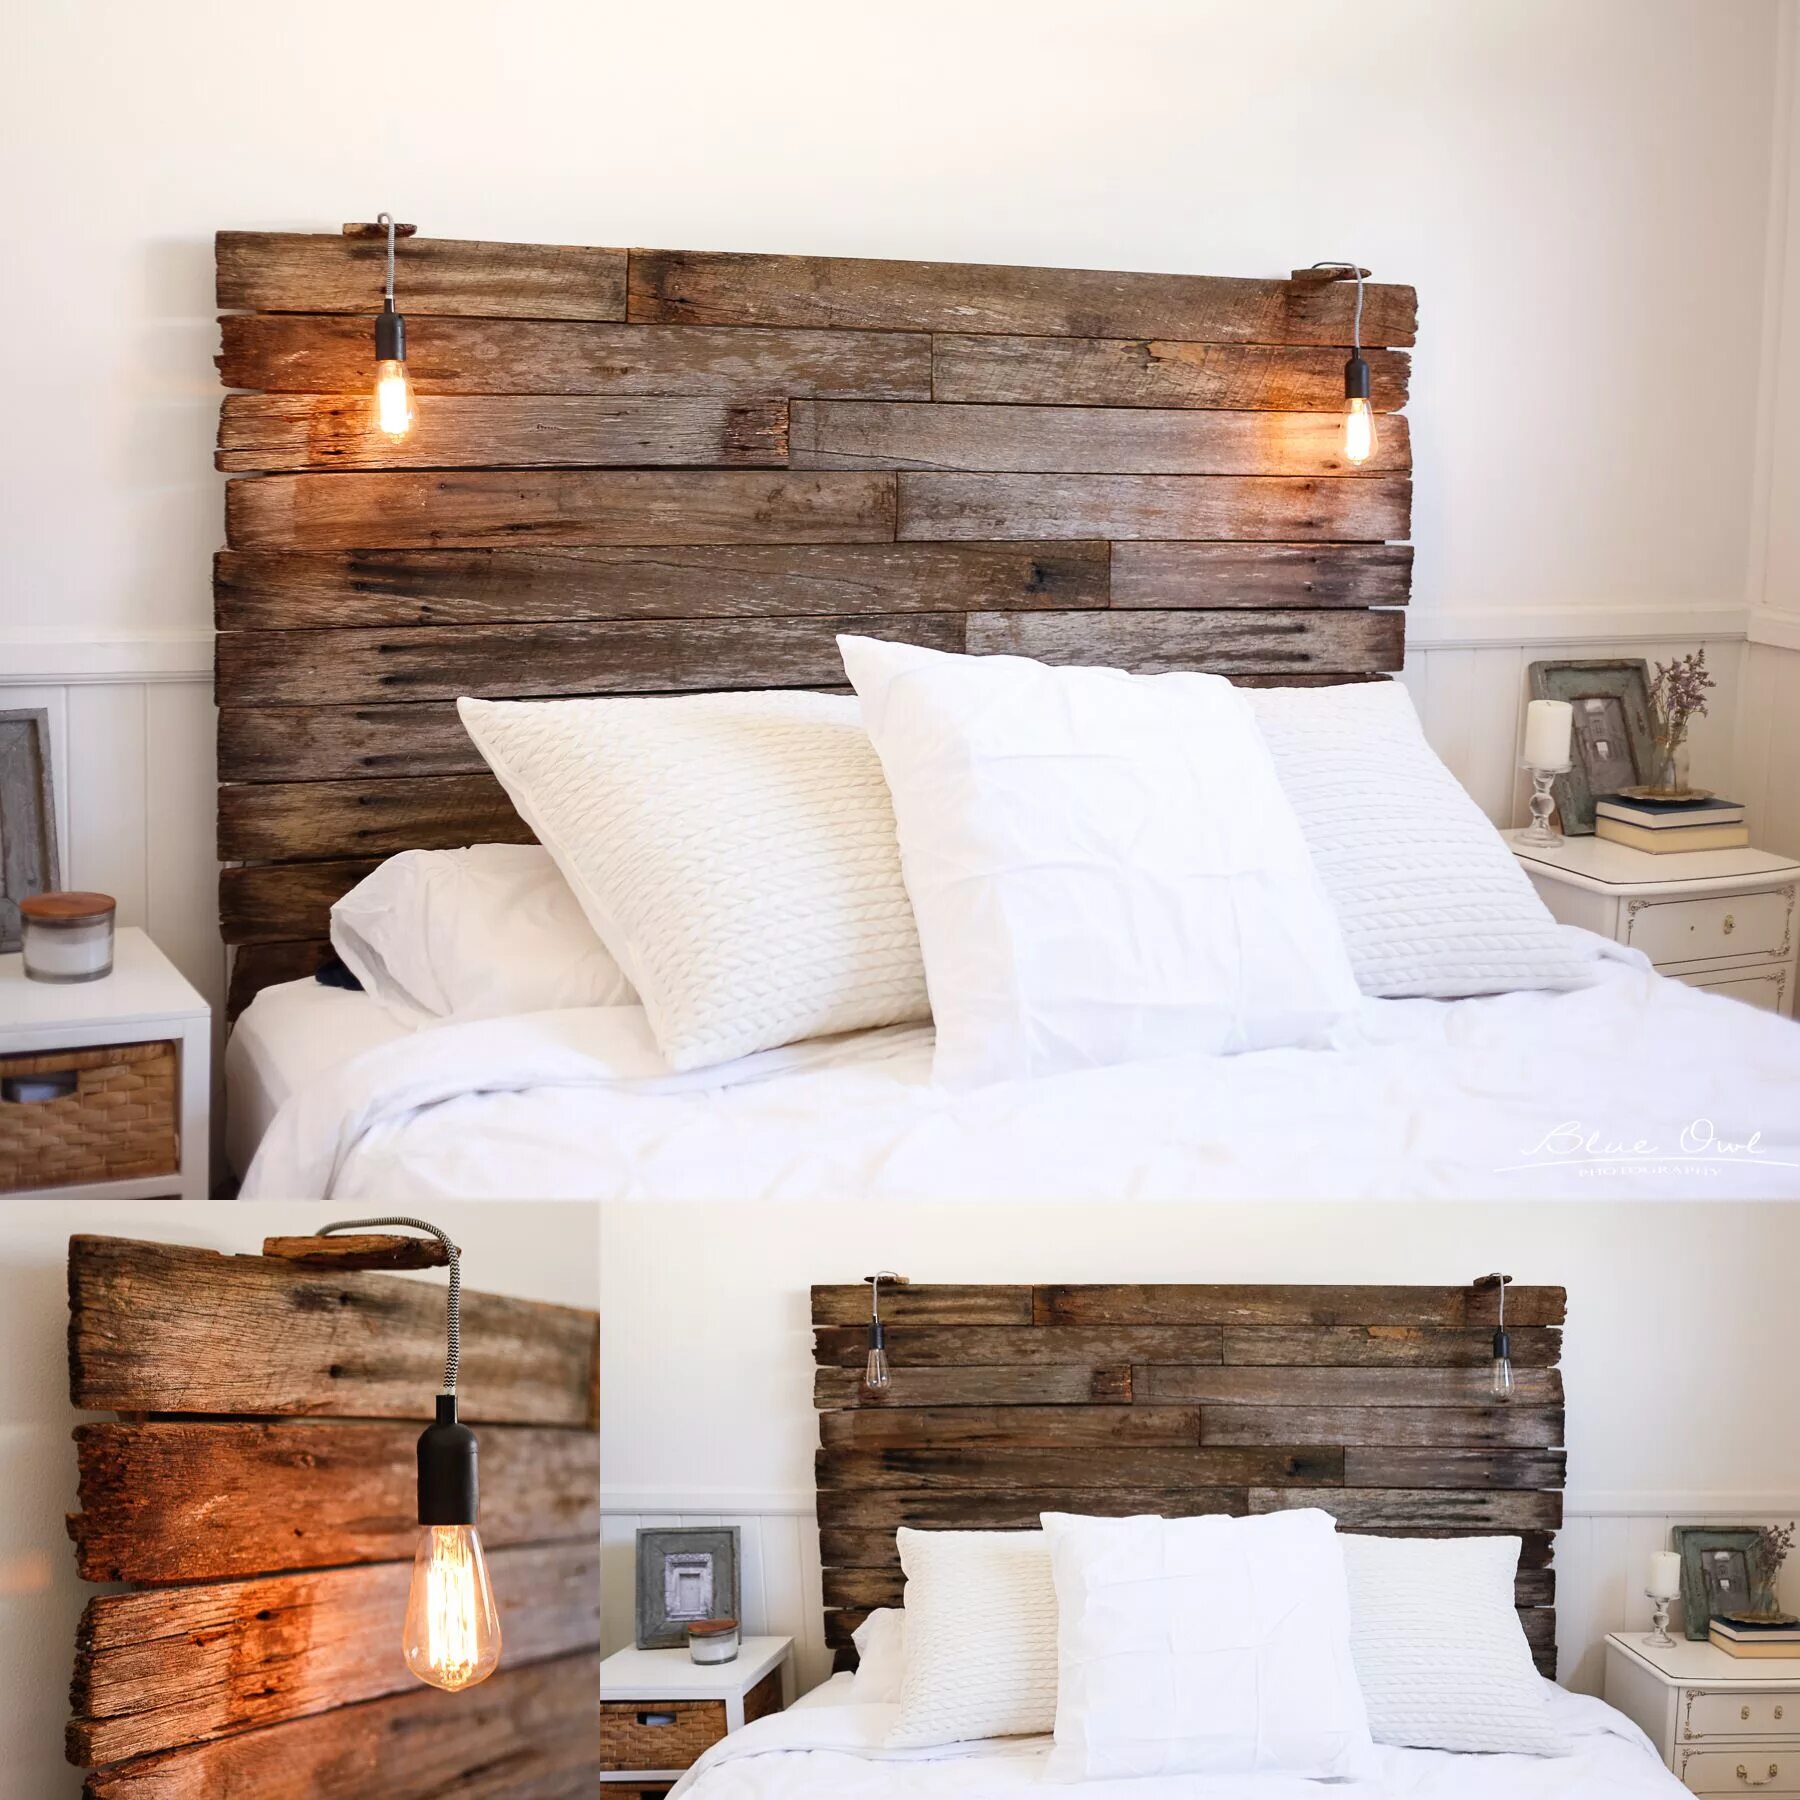 Изголовье кровати из дерева. Деревянное изголовье. Кровать с деревянным изголовьем. Изголовьев кровати из дерева.